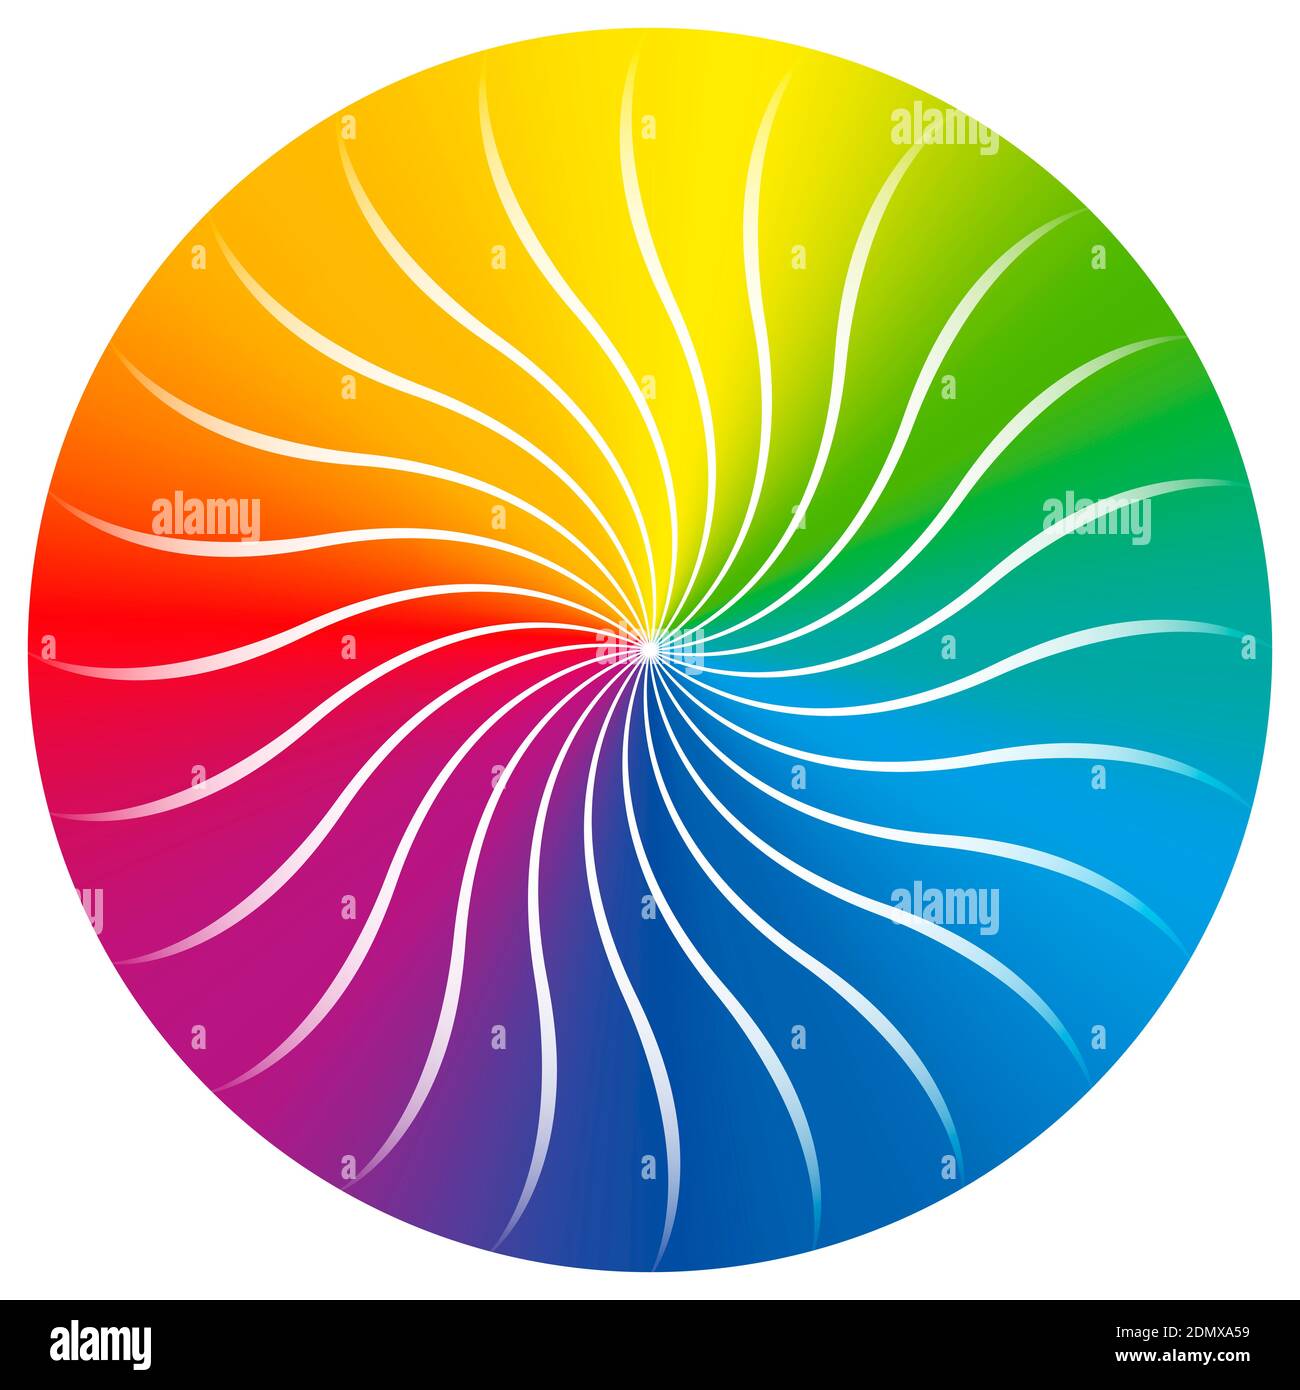 Regenbogenfarbiger Kreis mit konzentrischem Wellenmuster. Farbverlauf verdrehte, scheibenförmige Abbildung. Stockfoto